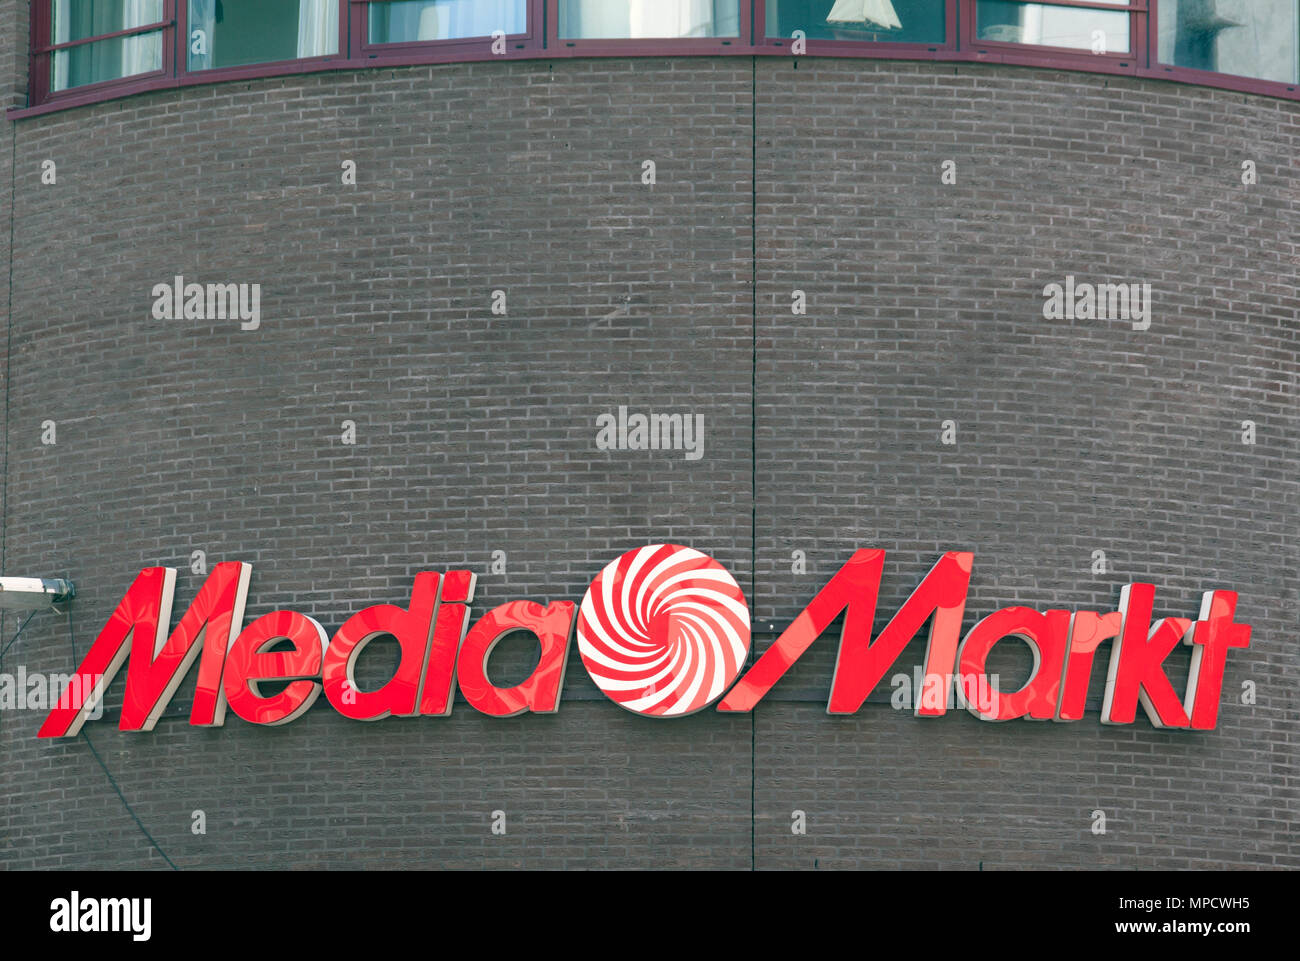 La Haye, Pays-Bas-mai 27, 2015 : Media Markt est une chaîne de distribution allemand qui se spécialise dans les produits électroniques de consommation. Banque D'Images